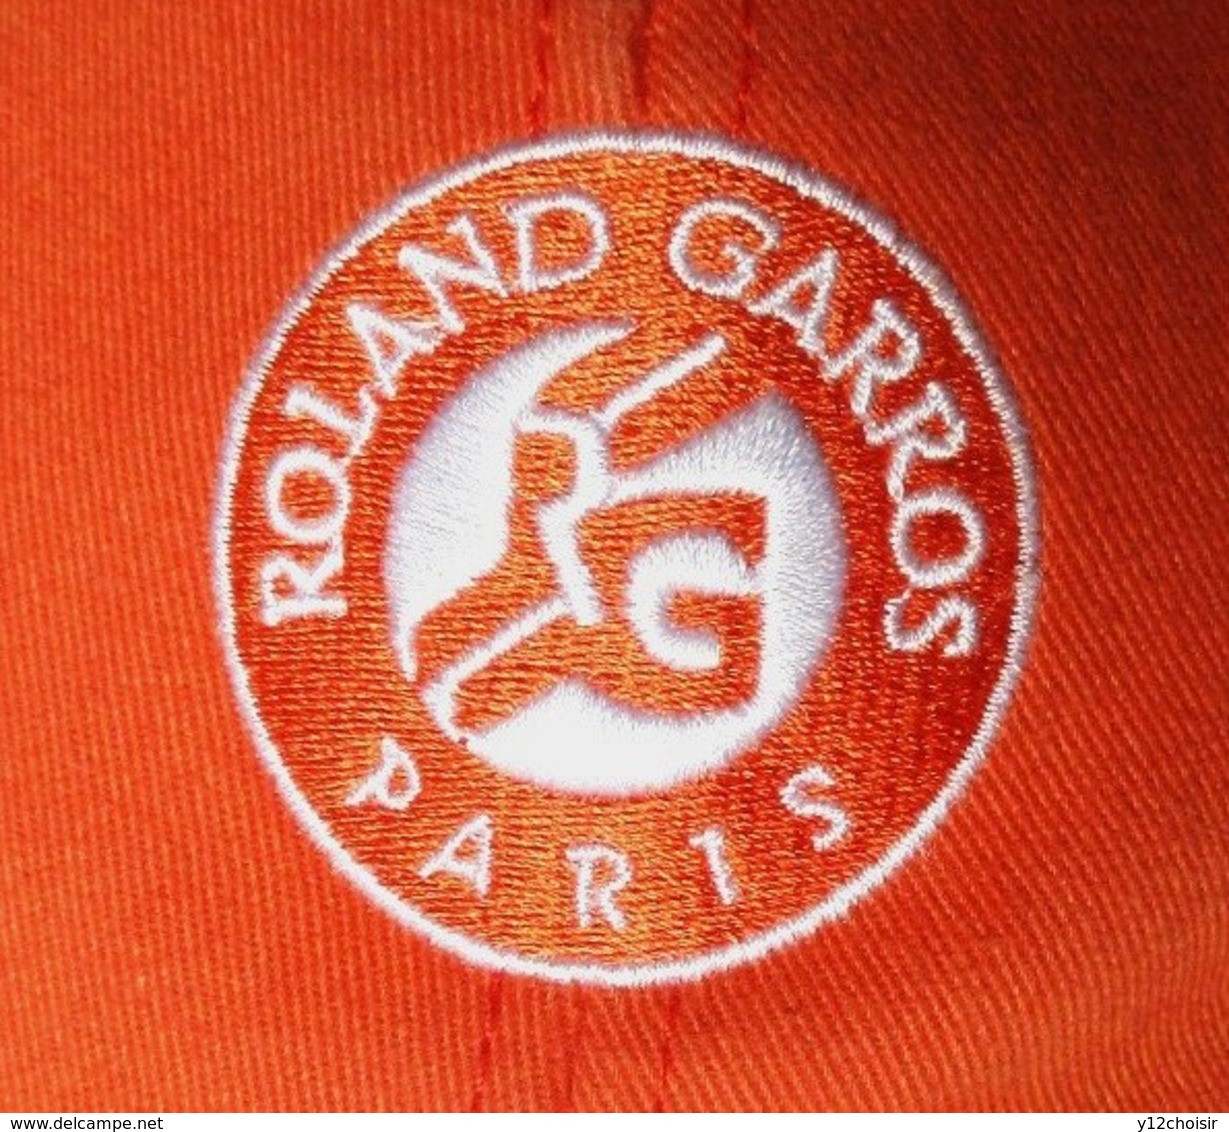 CASQUETTE & PORTE CLEFS BALLE DE TENNIS ROLAND GARROS RG PARIS TENNIS 2016 - Apparel, Souvenirs & Other